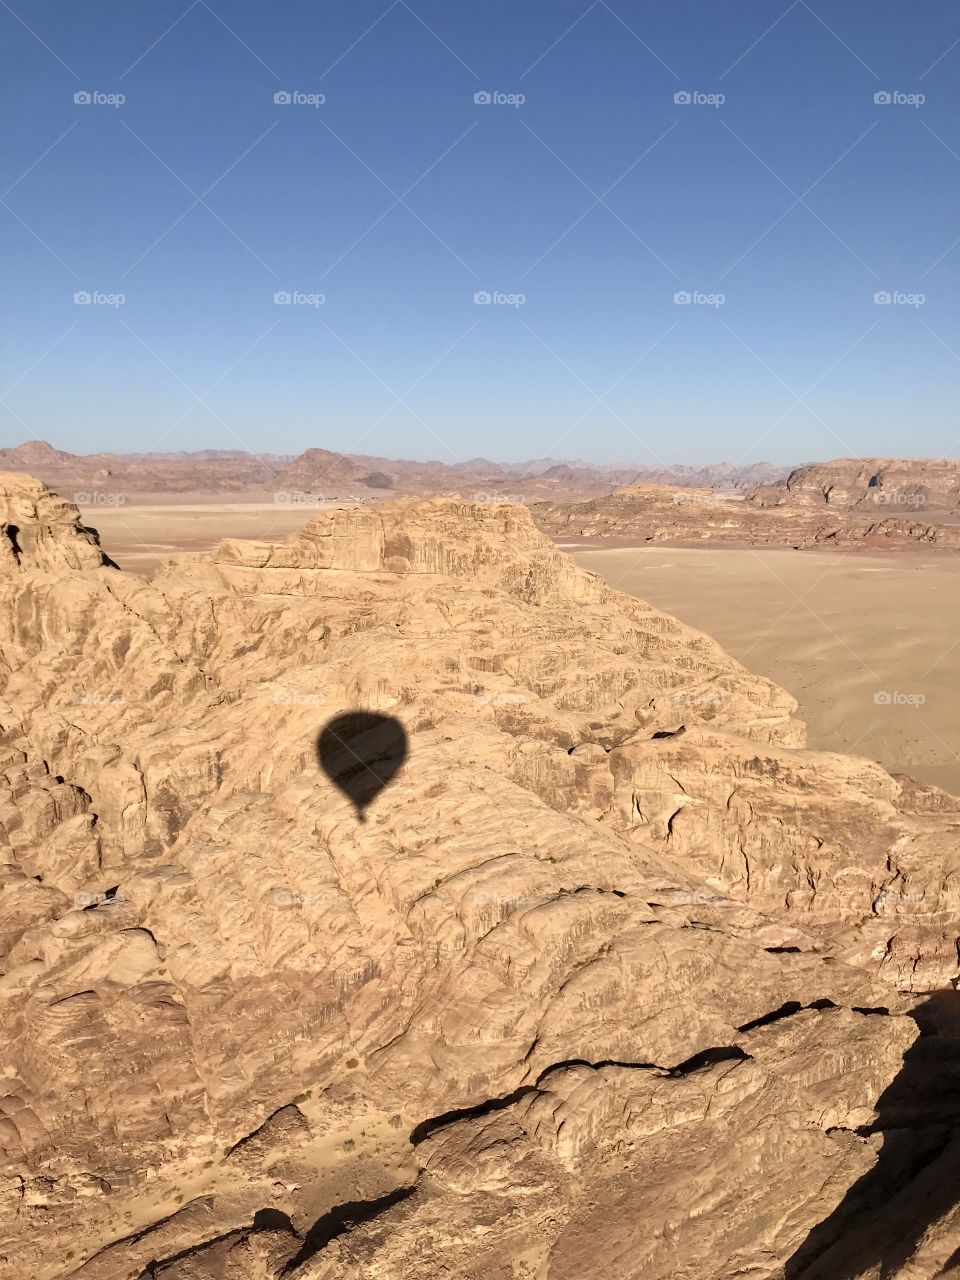 Flying over desert. Hot-air balloon. Wadi rum desert. Jordan